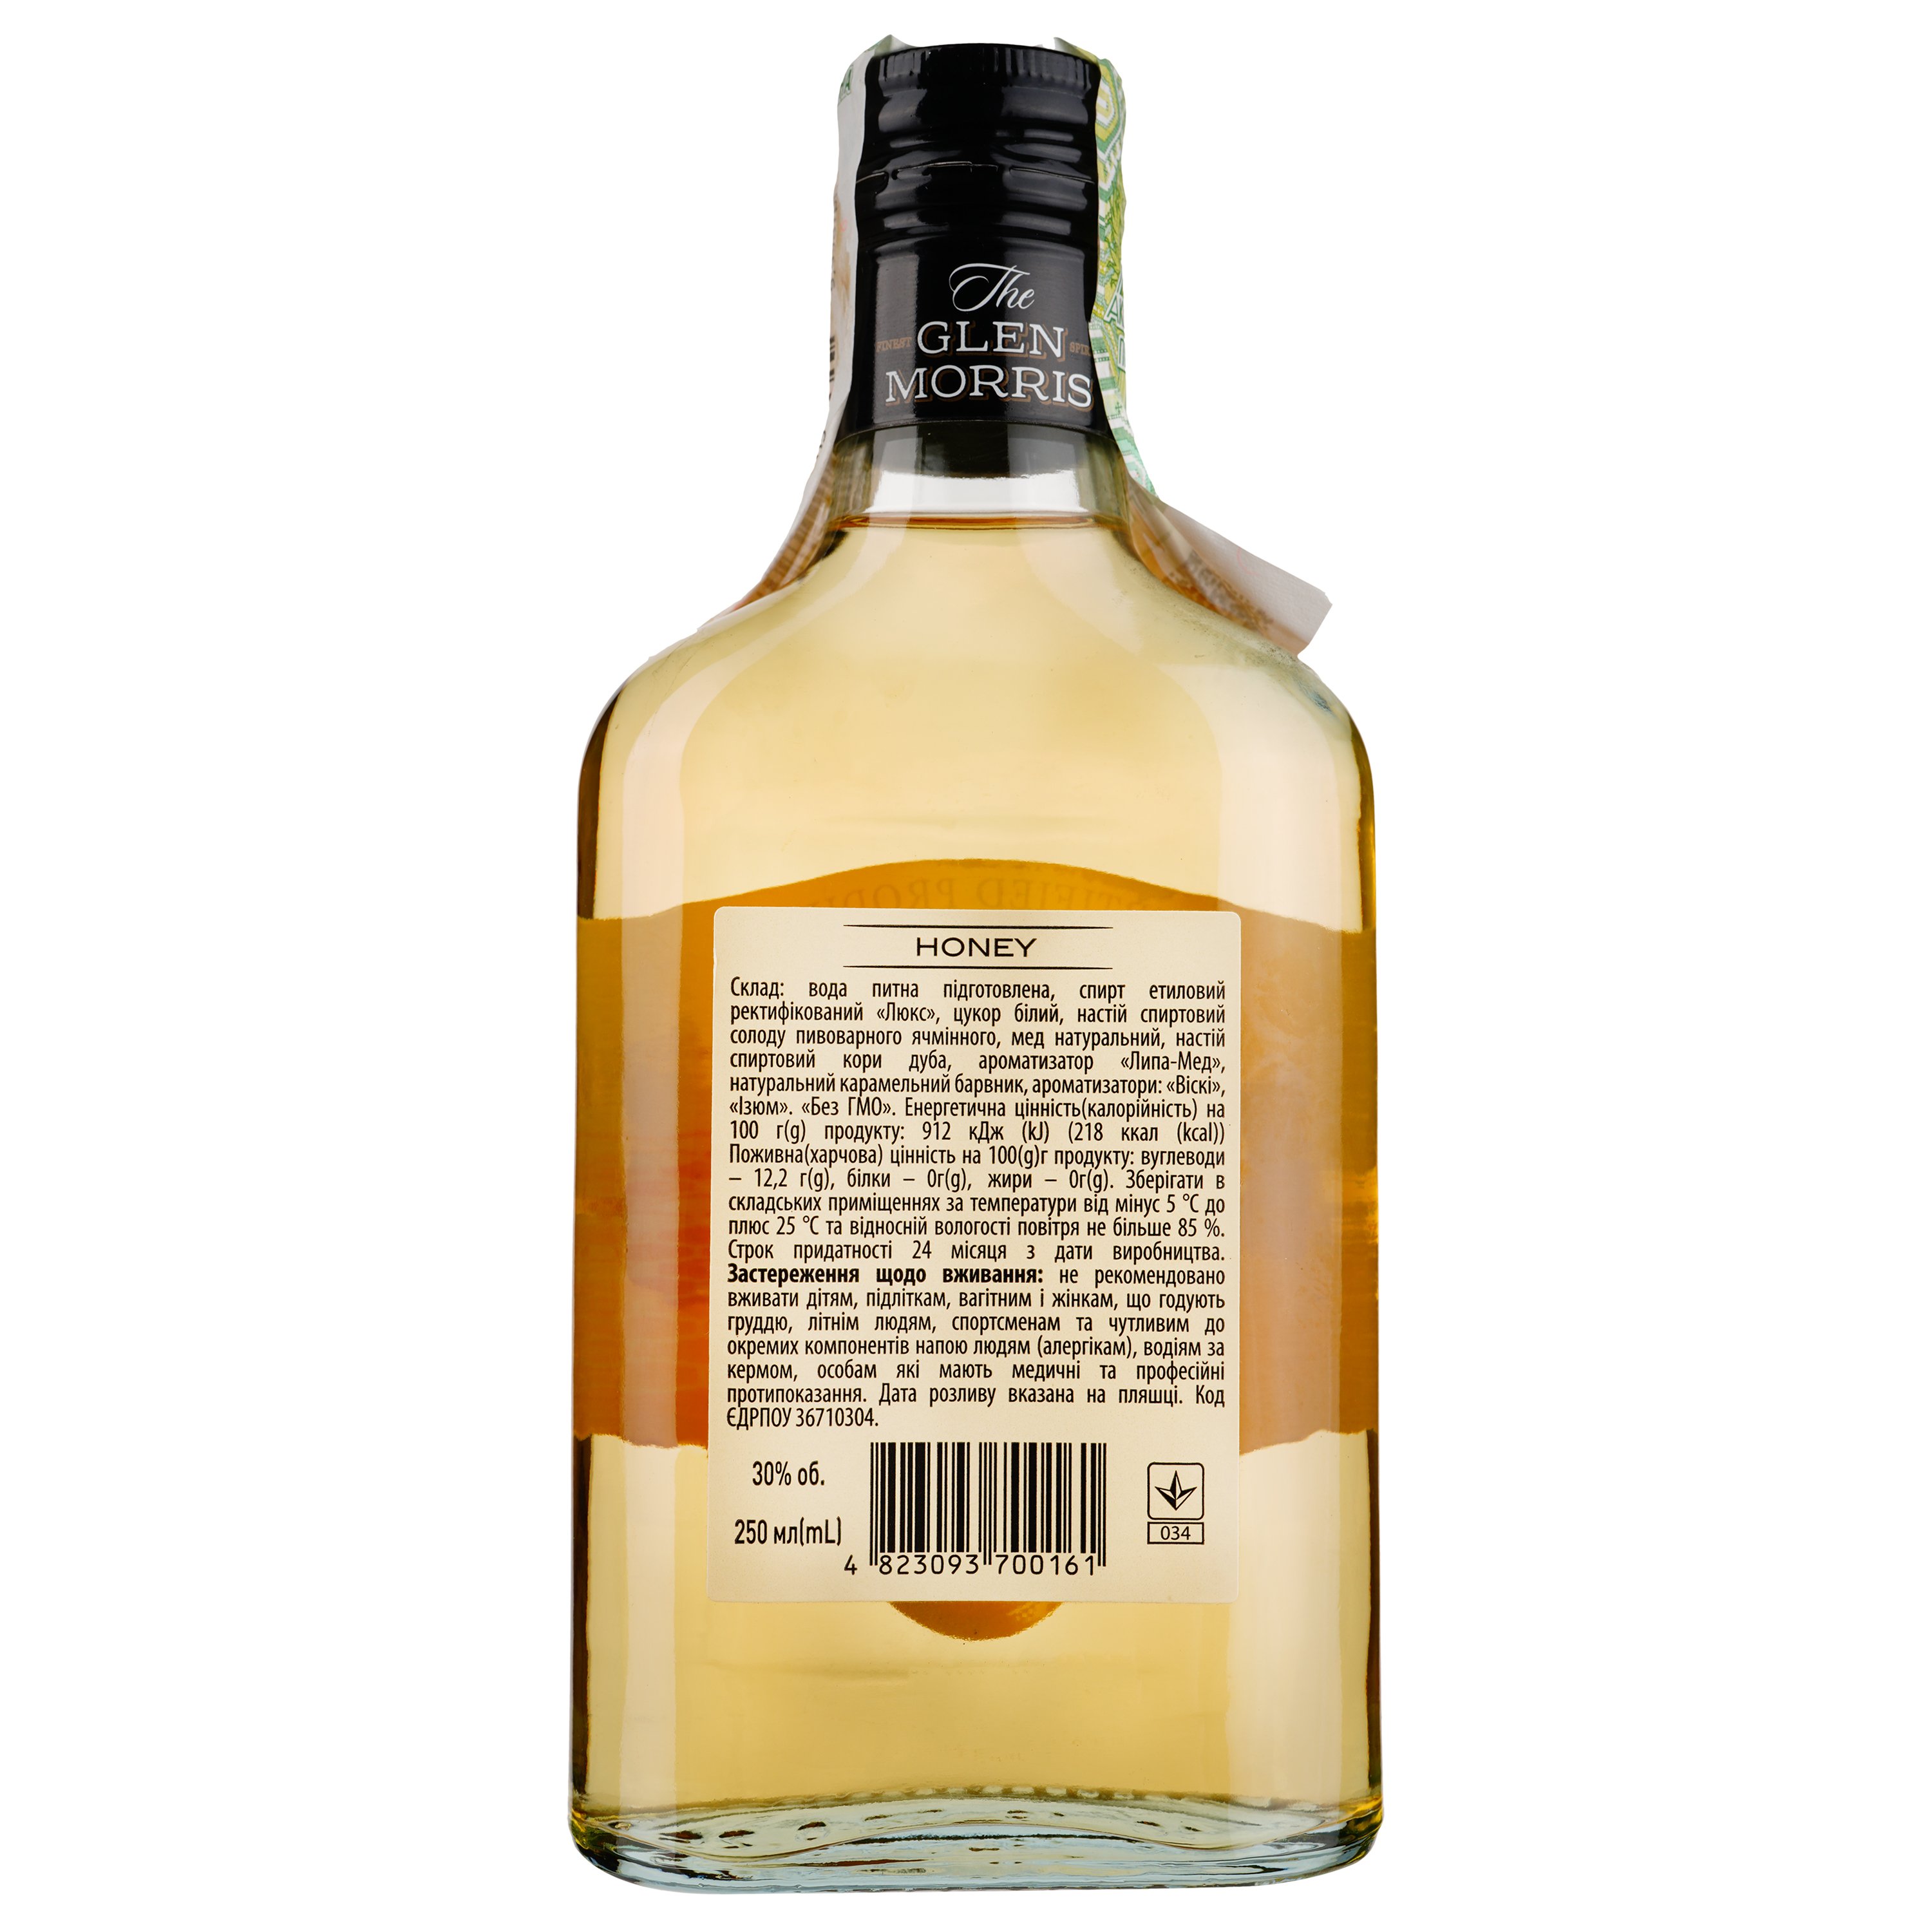 Напиток алкогольный The Glen Morris Honey, 30%, 0,25 л - фото 2